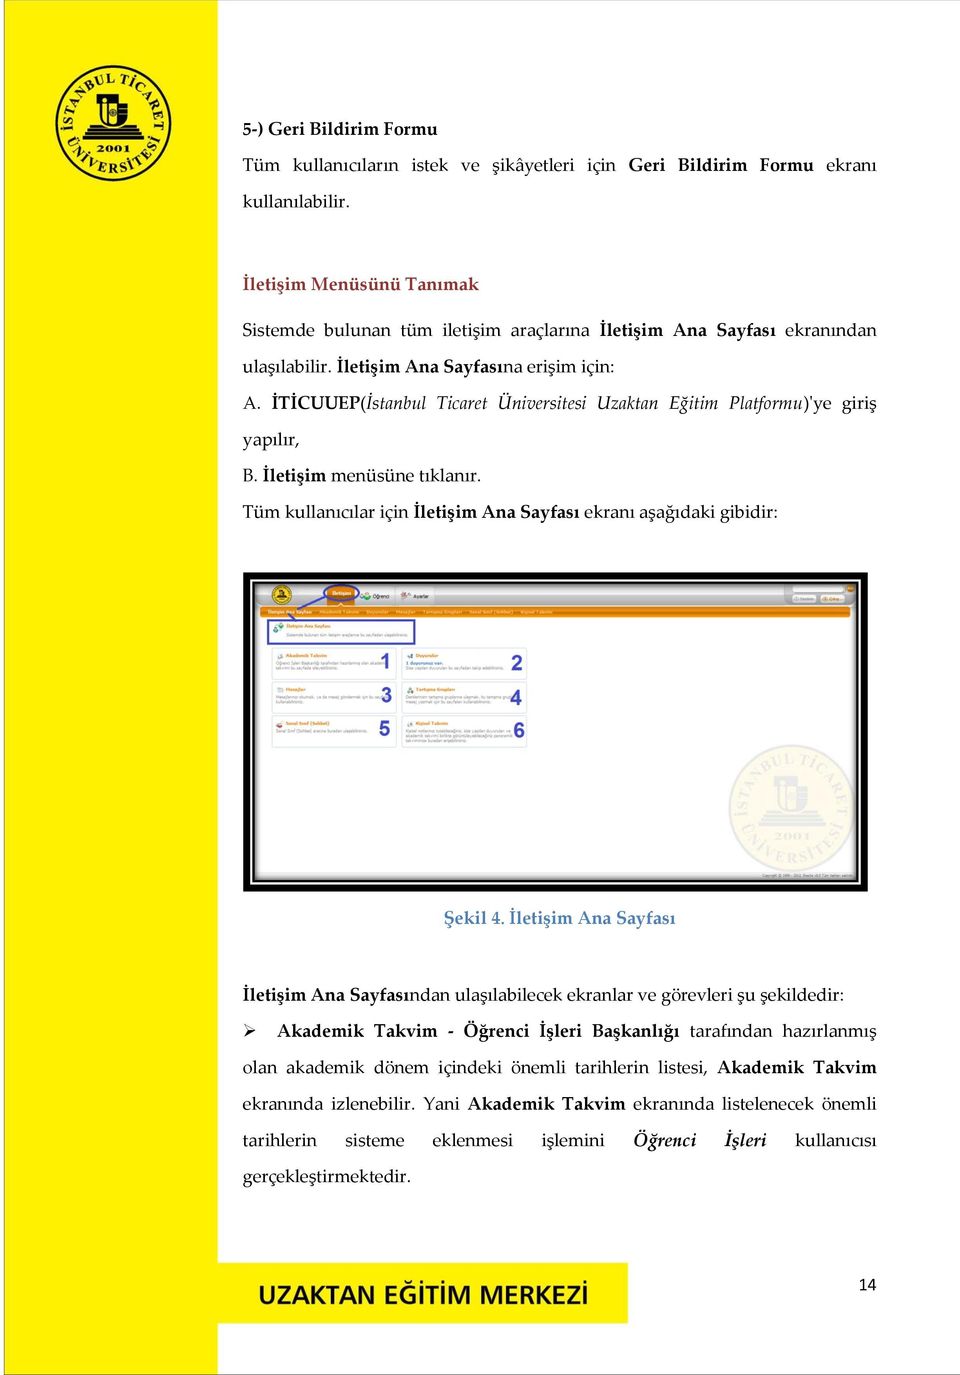 İTİCUUEP(İstanbul Ticaret Üniversitesi Uzaktan Eğitim Platformu)'ye giriş yapılır, B. İletişim menüsüne tıklanır. Tüm kullanıcılar için İletişim Ana Sayfası ekranı aşağıdaki gibidir: Şekil 4.